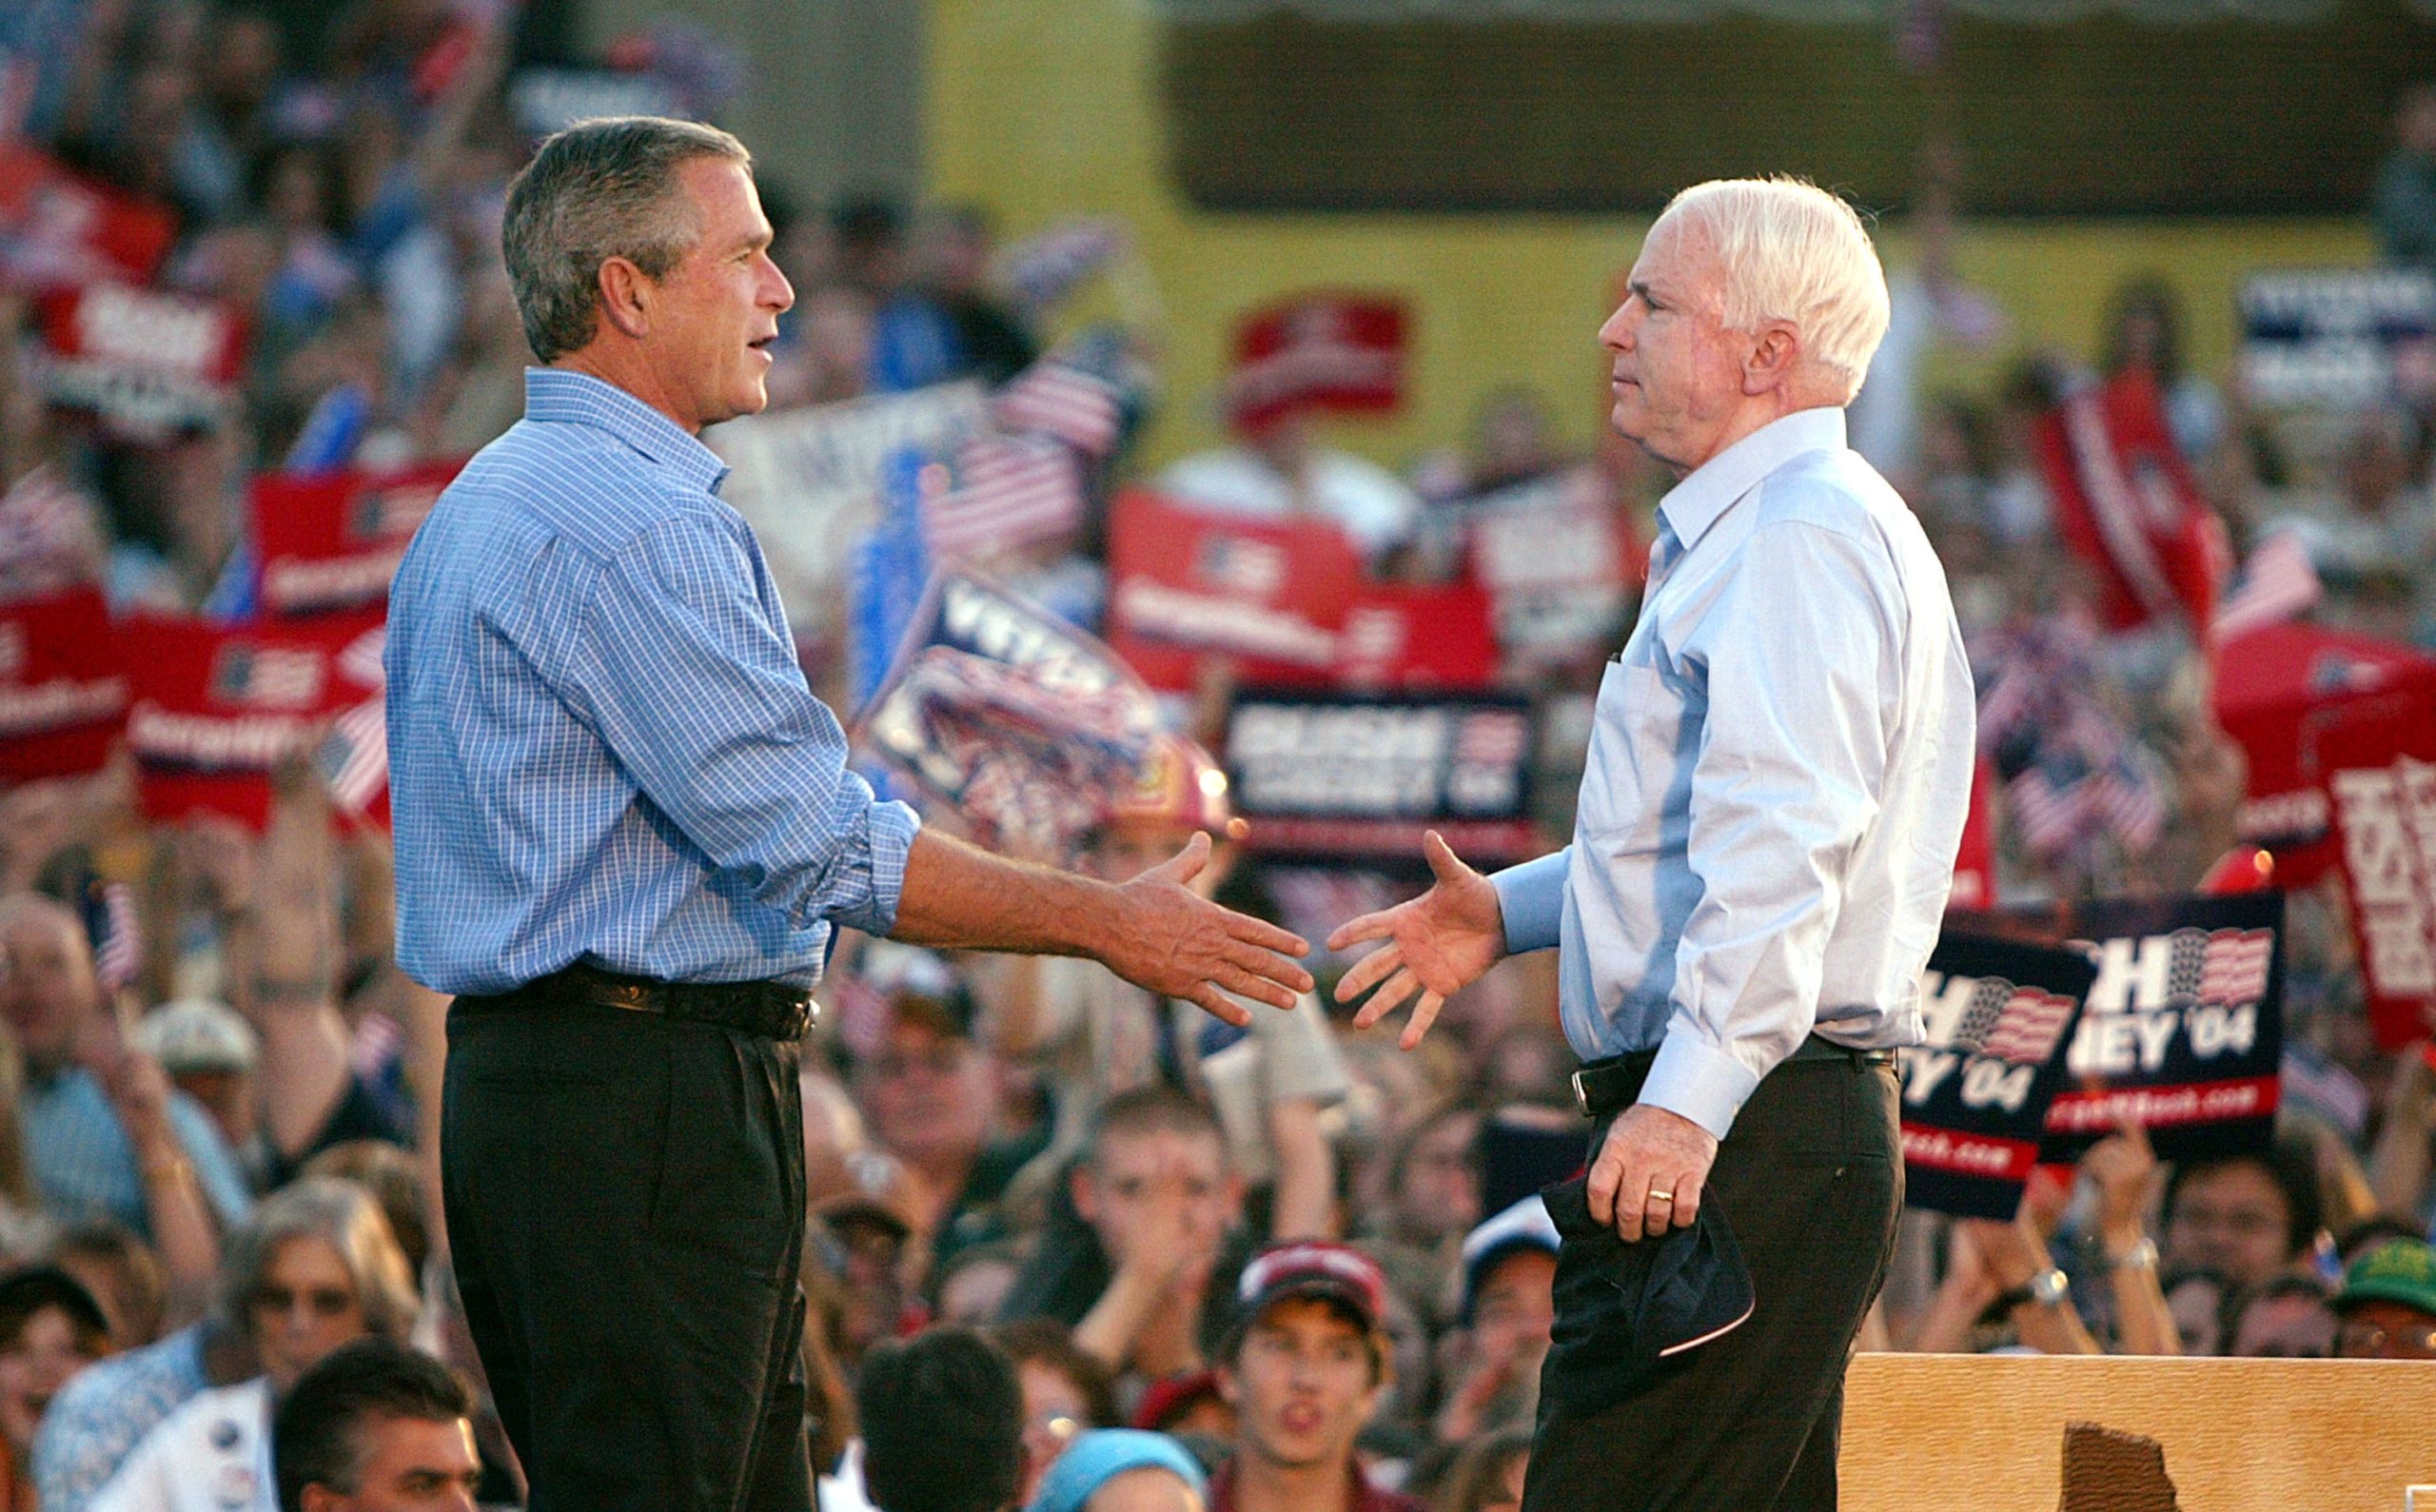 Bush Campaigns In Nevada And Oregon